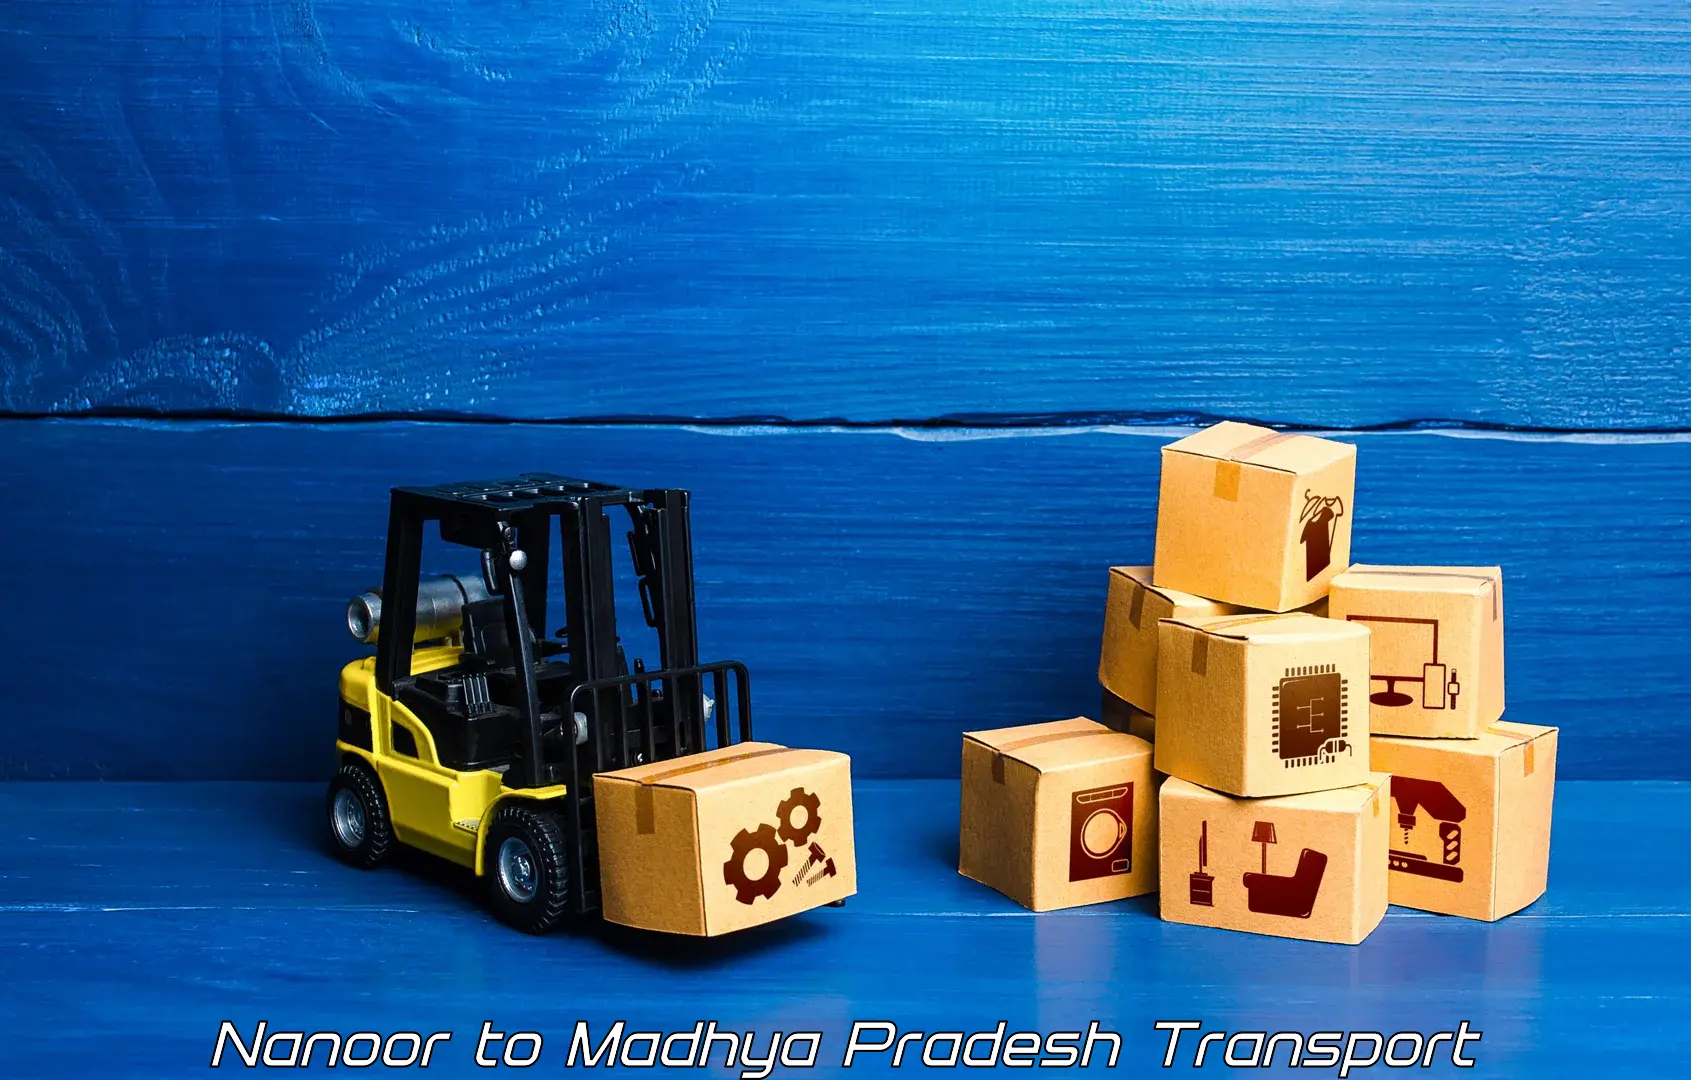 Furniture transport service Nanoor to Rampur Baghelan